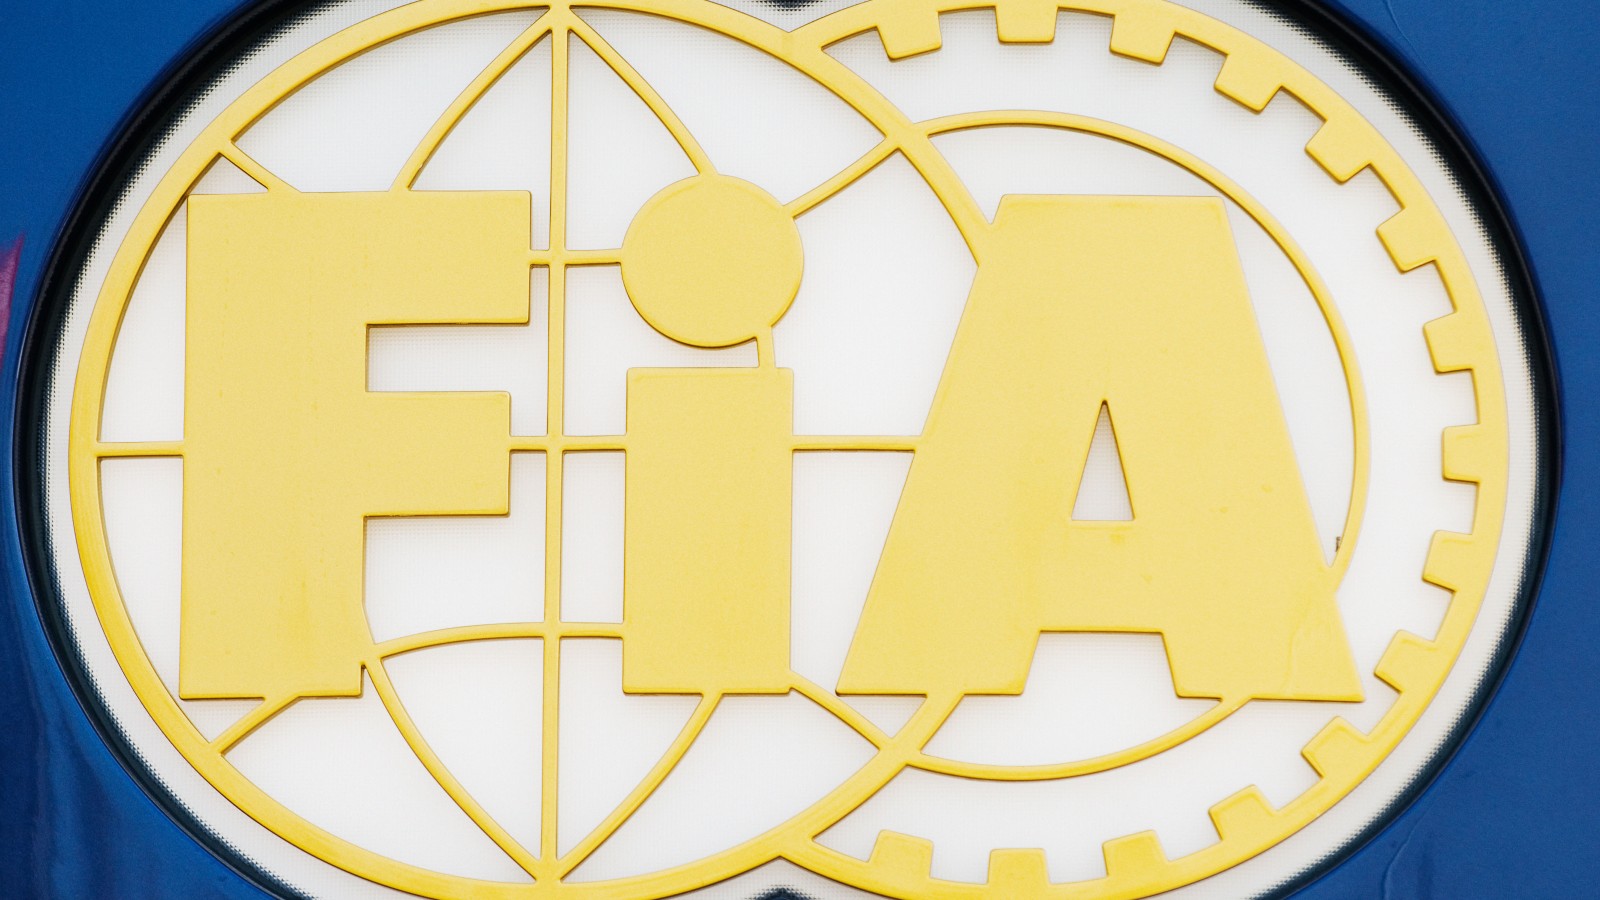 The FIA logo. February 2008.